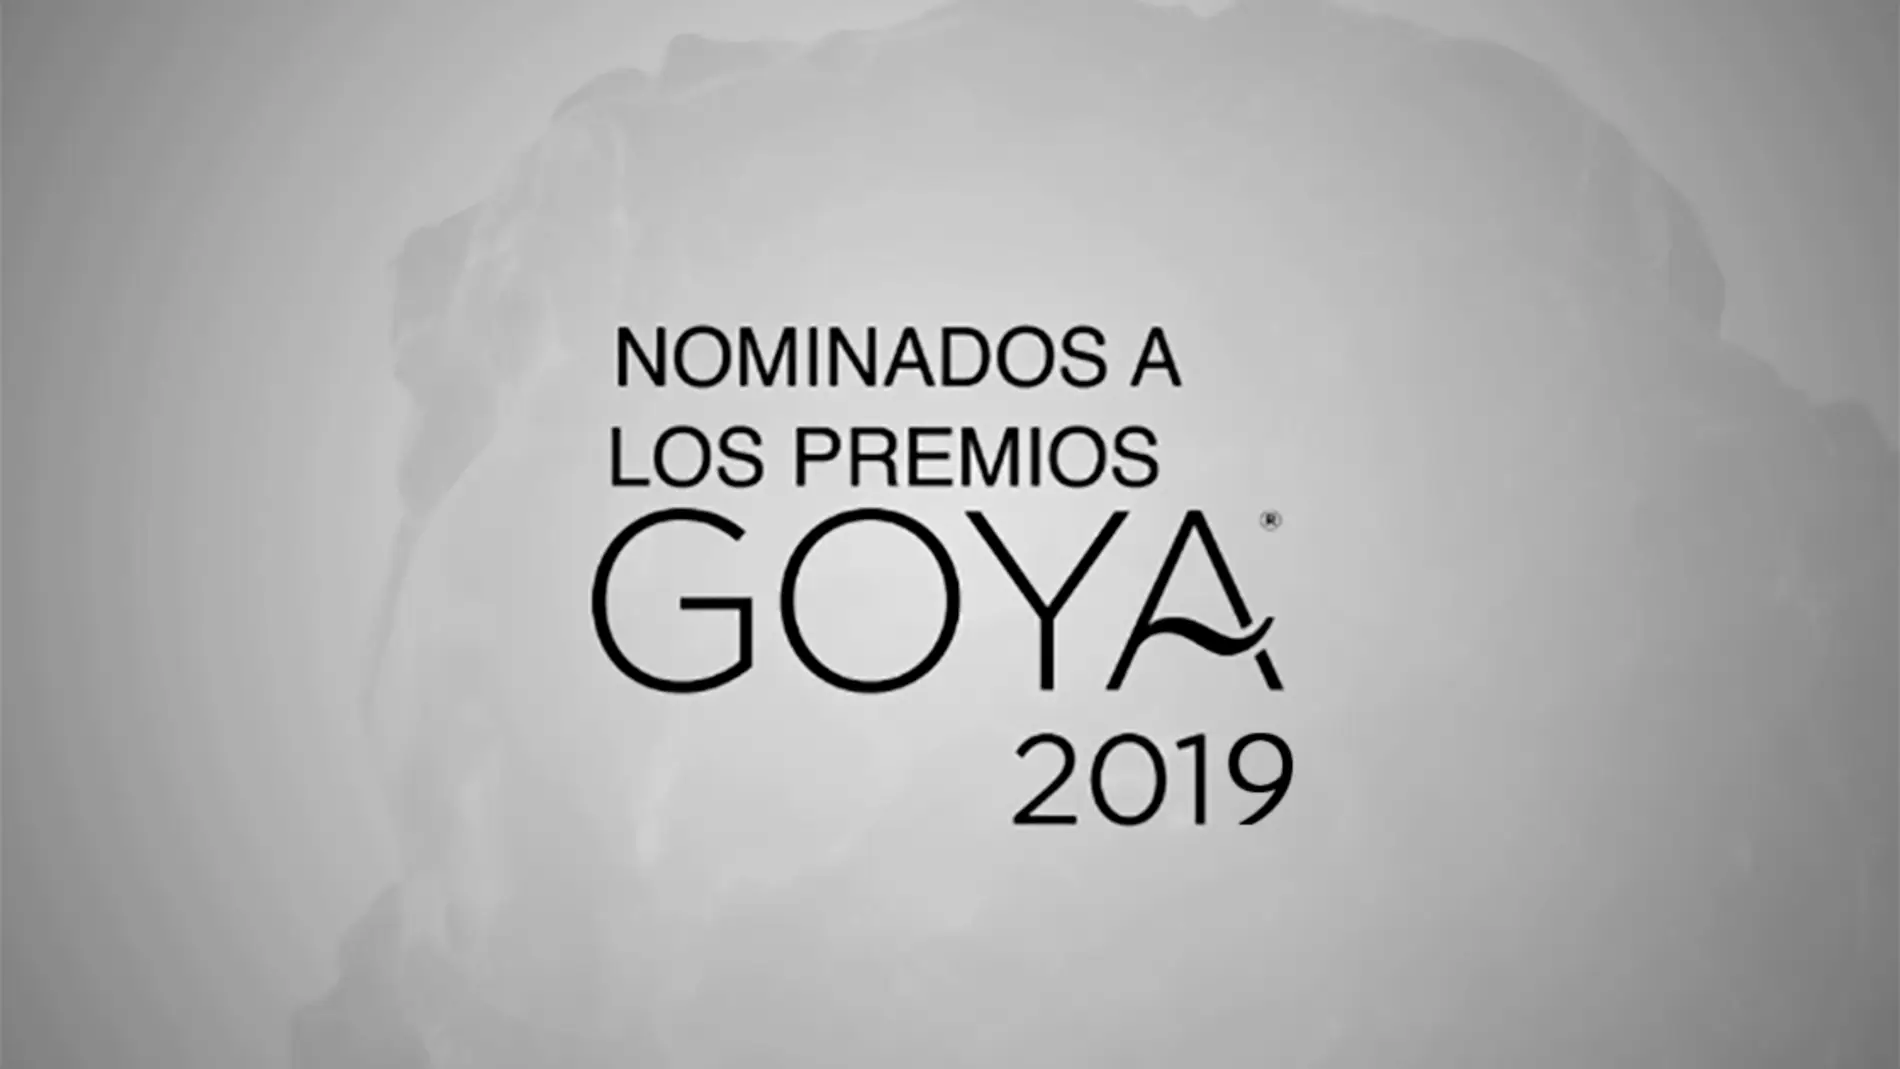 Consulta la lista completa de nominados a los Premios Goya 2019